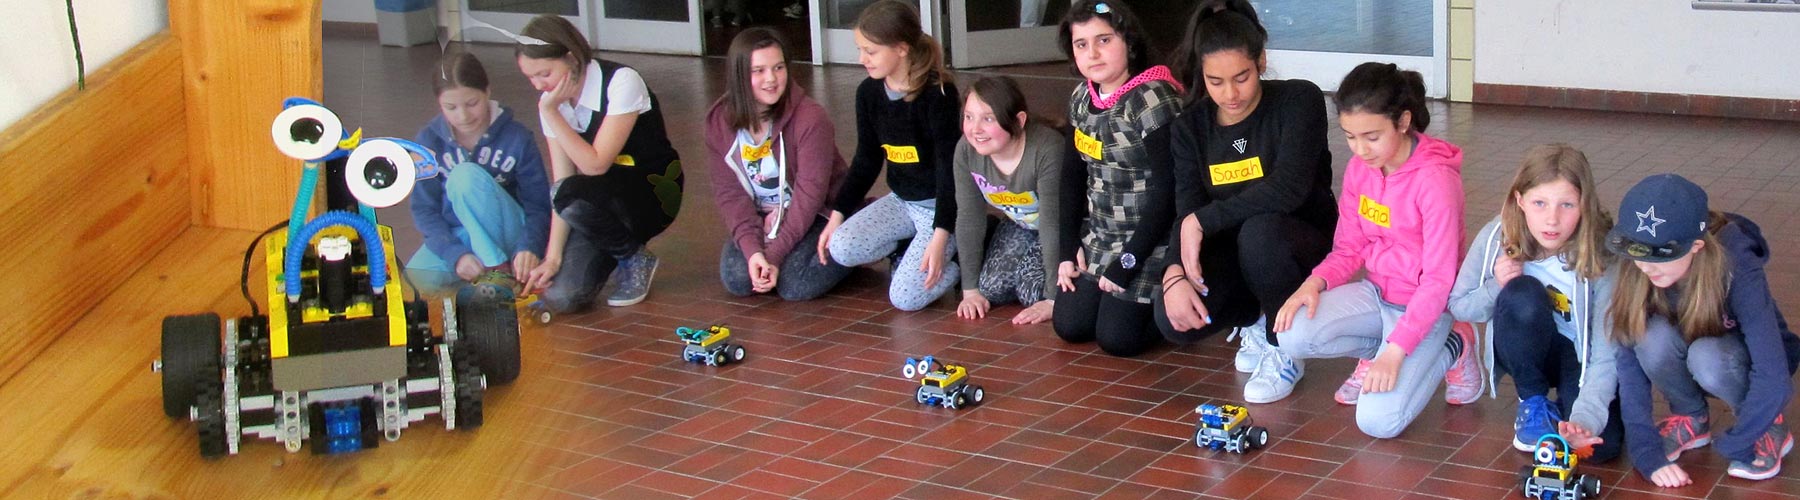 Mädchen präsentieren ihre selbst gebauten Roboter, Roberta, ZIMD